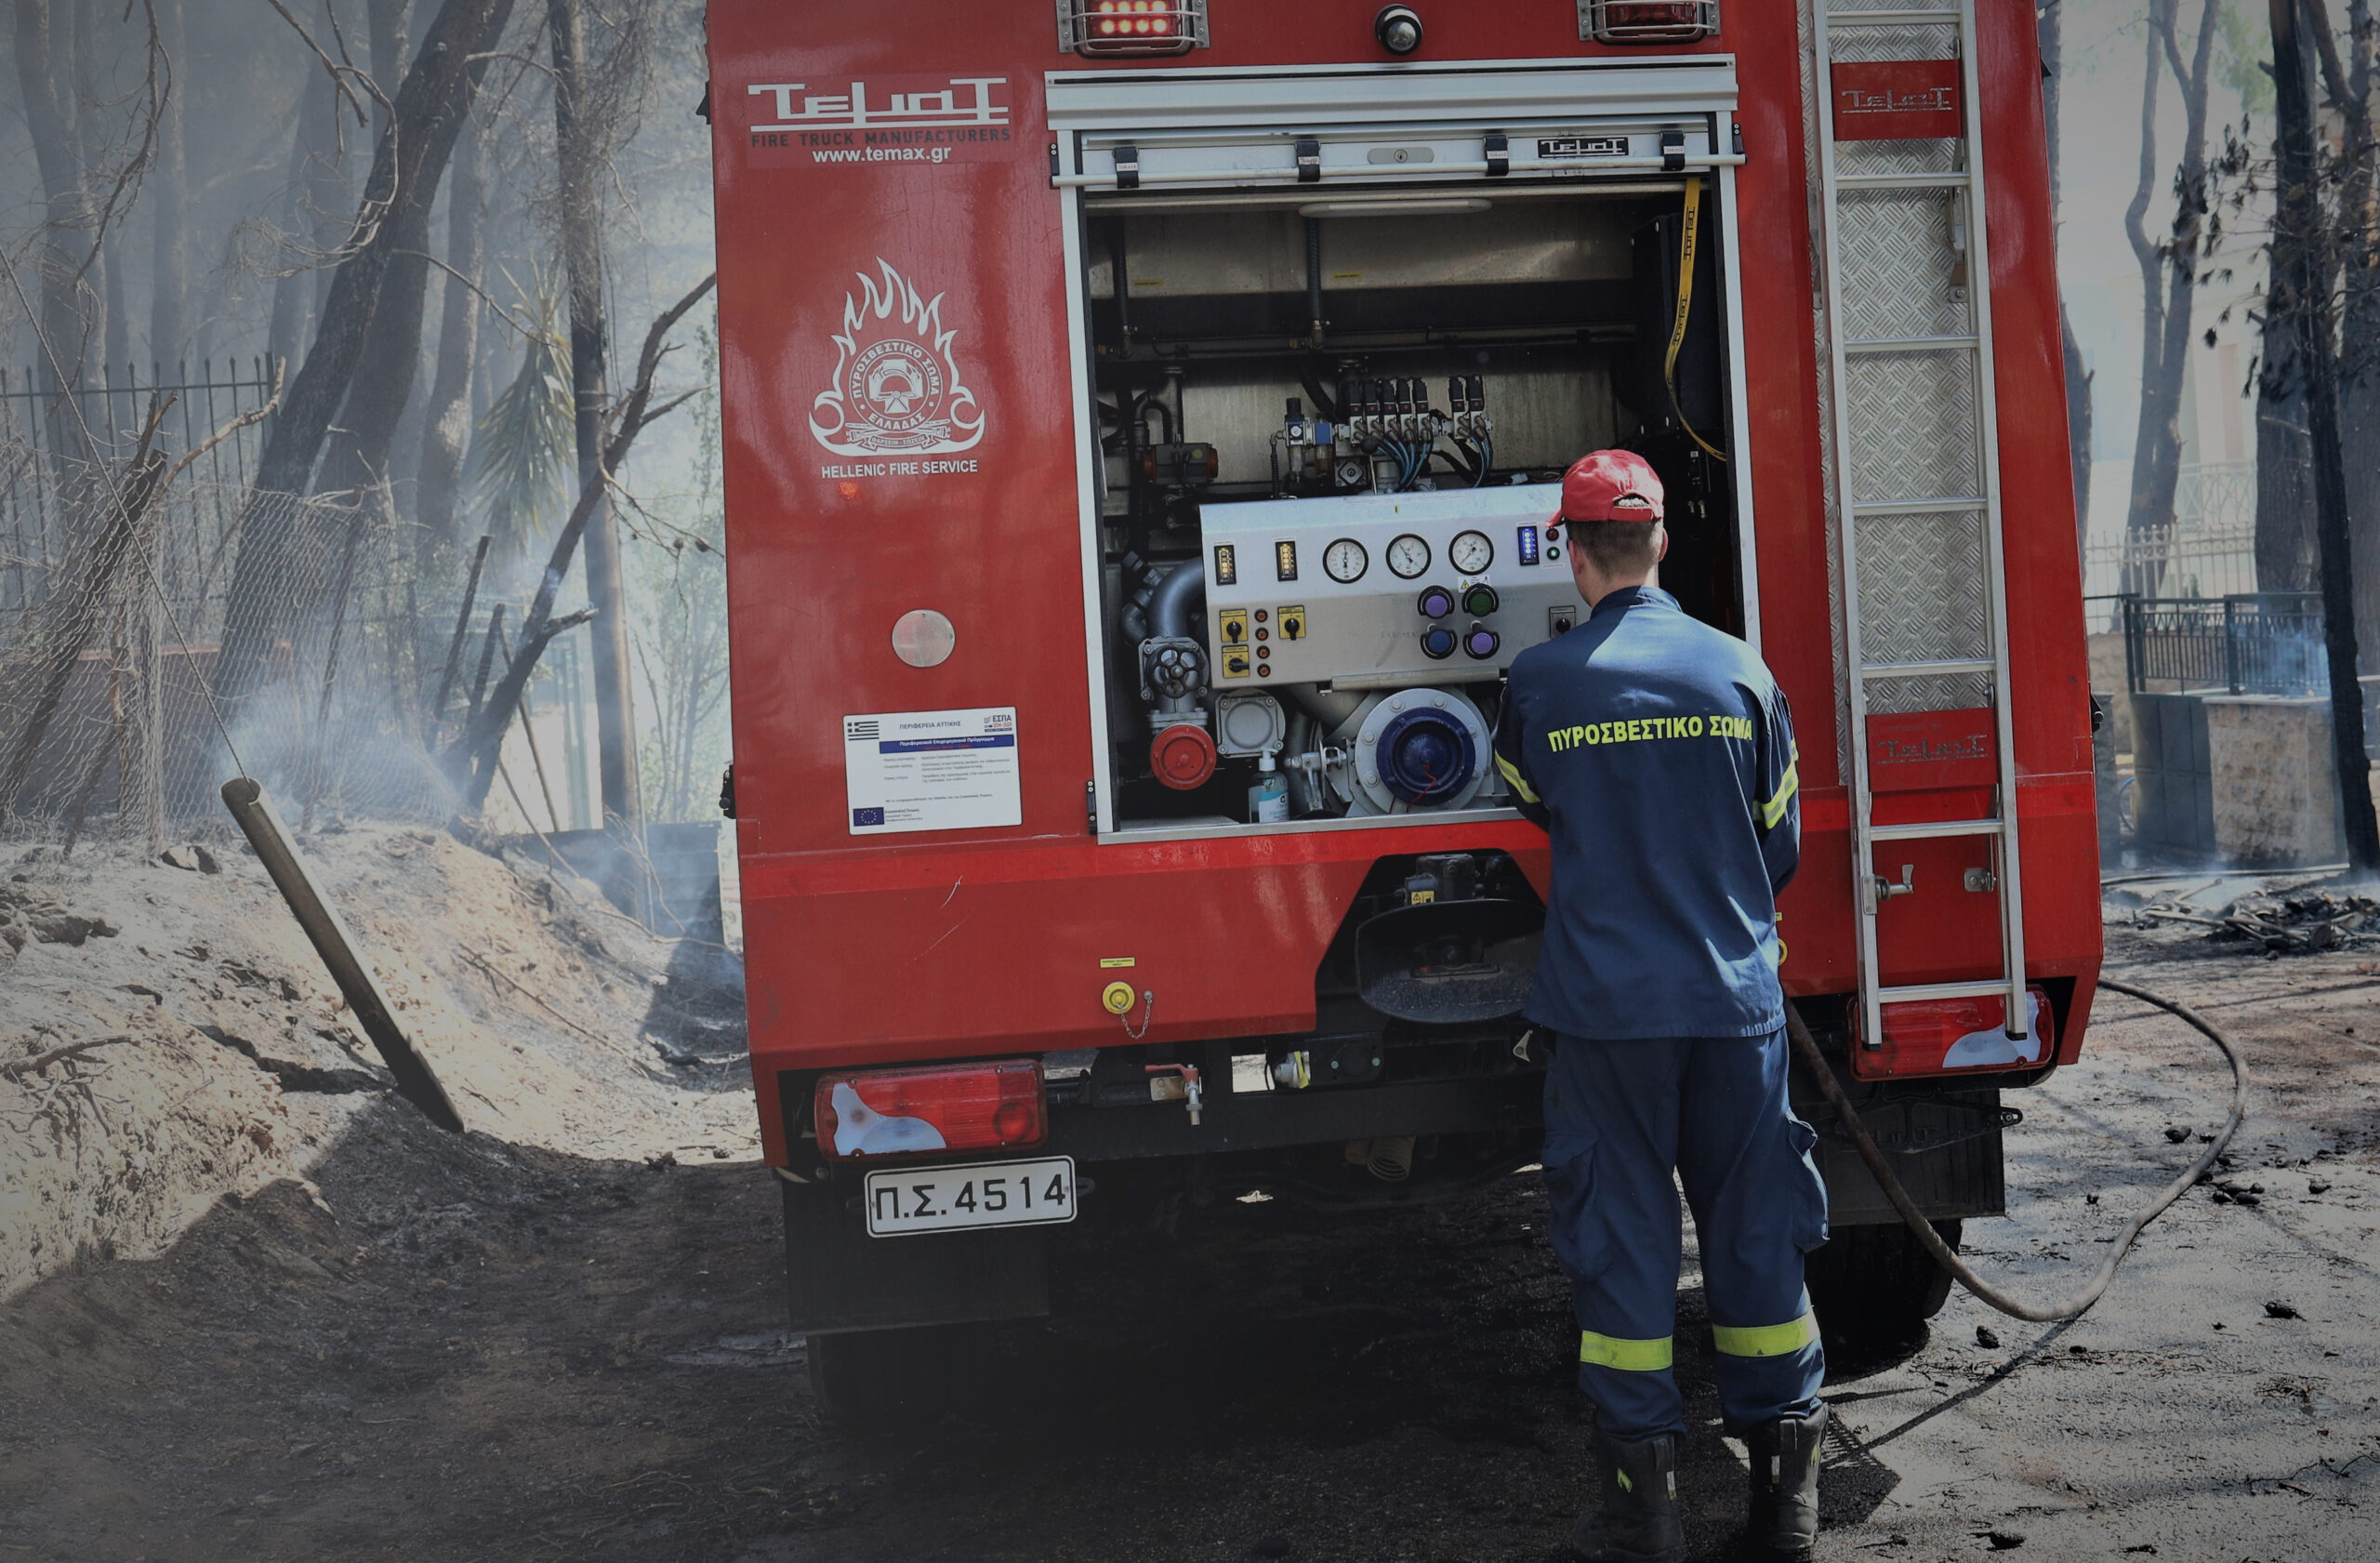 Άργος: Φωτιά κάτω από το κάστρο Λάρισα κινητοποίησε την πυροσβεστική